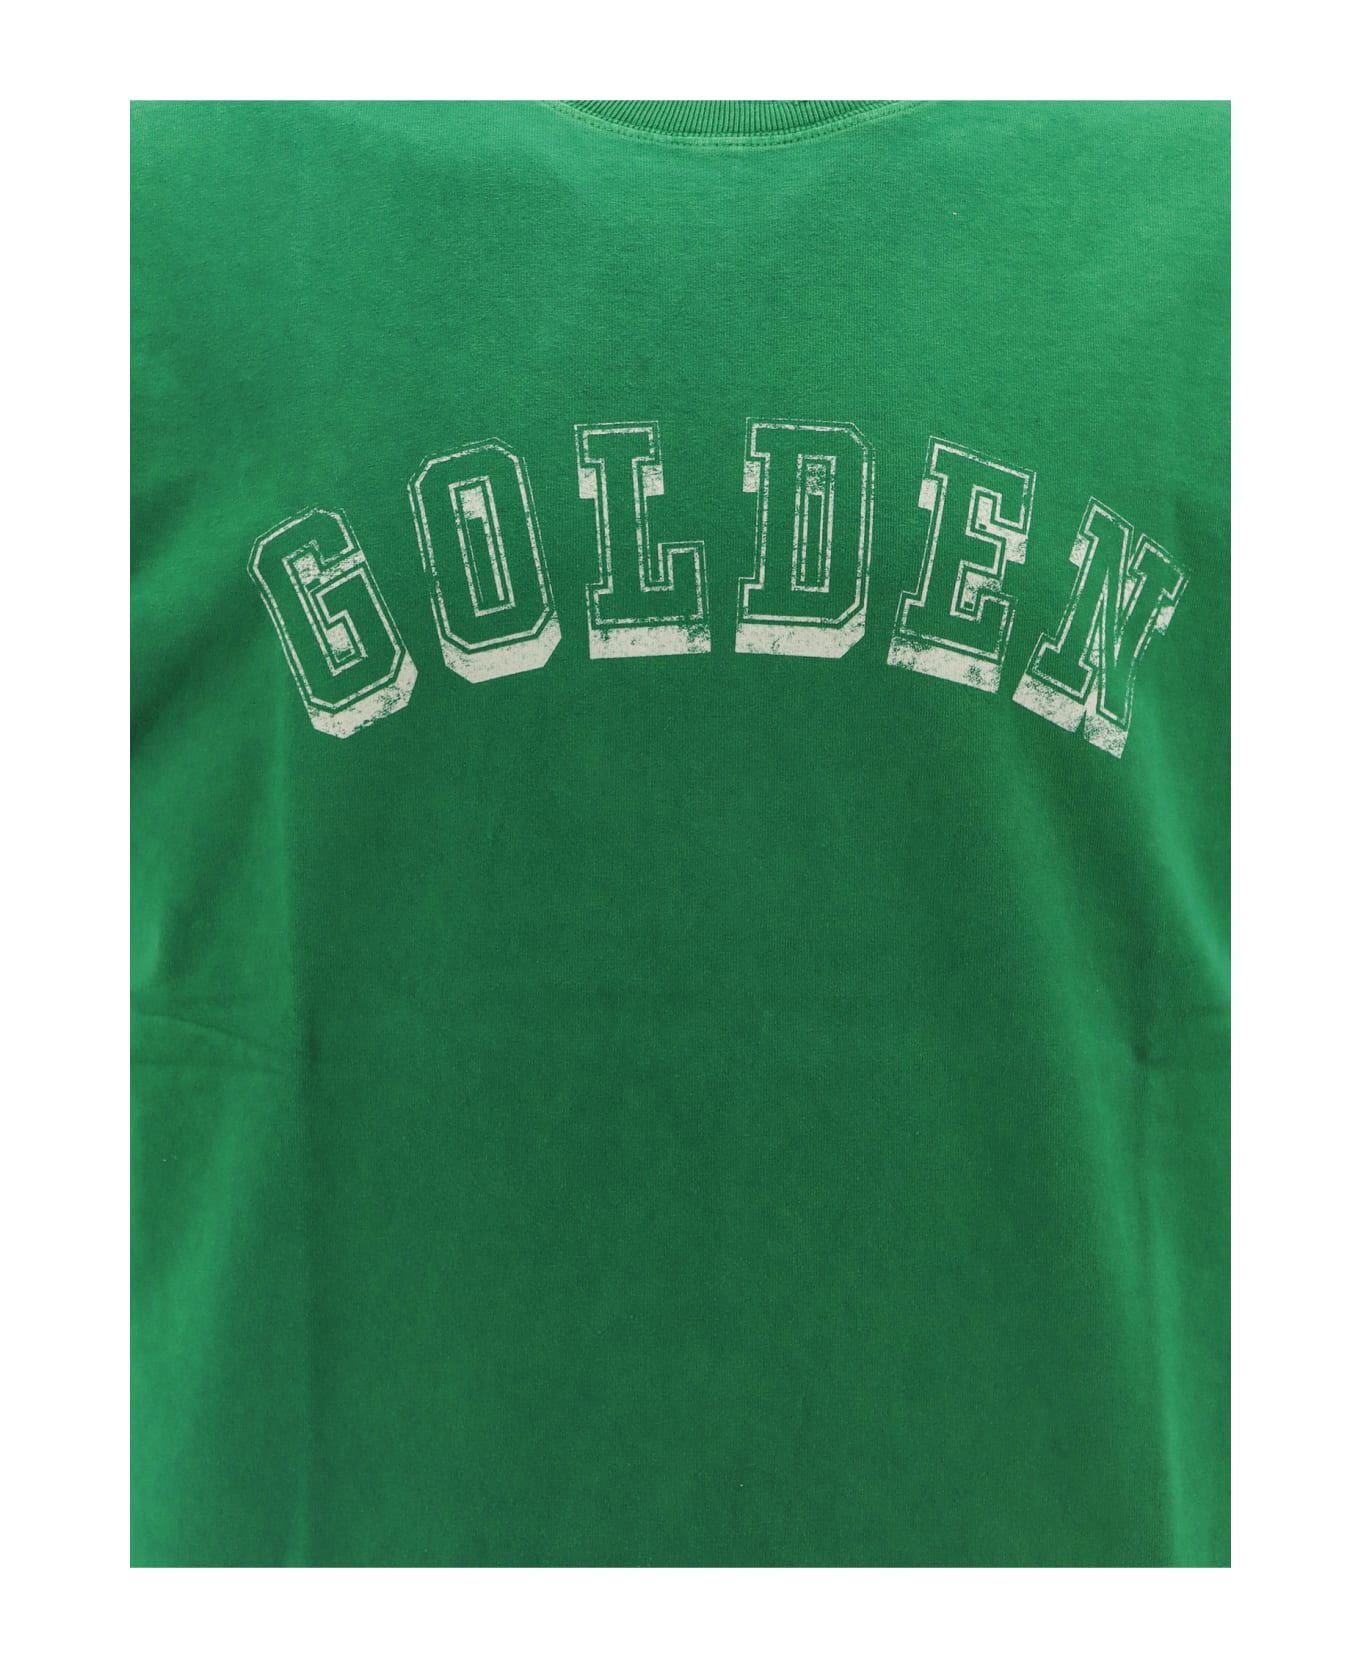 Golden Goose Logo T-shirt - Green